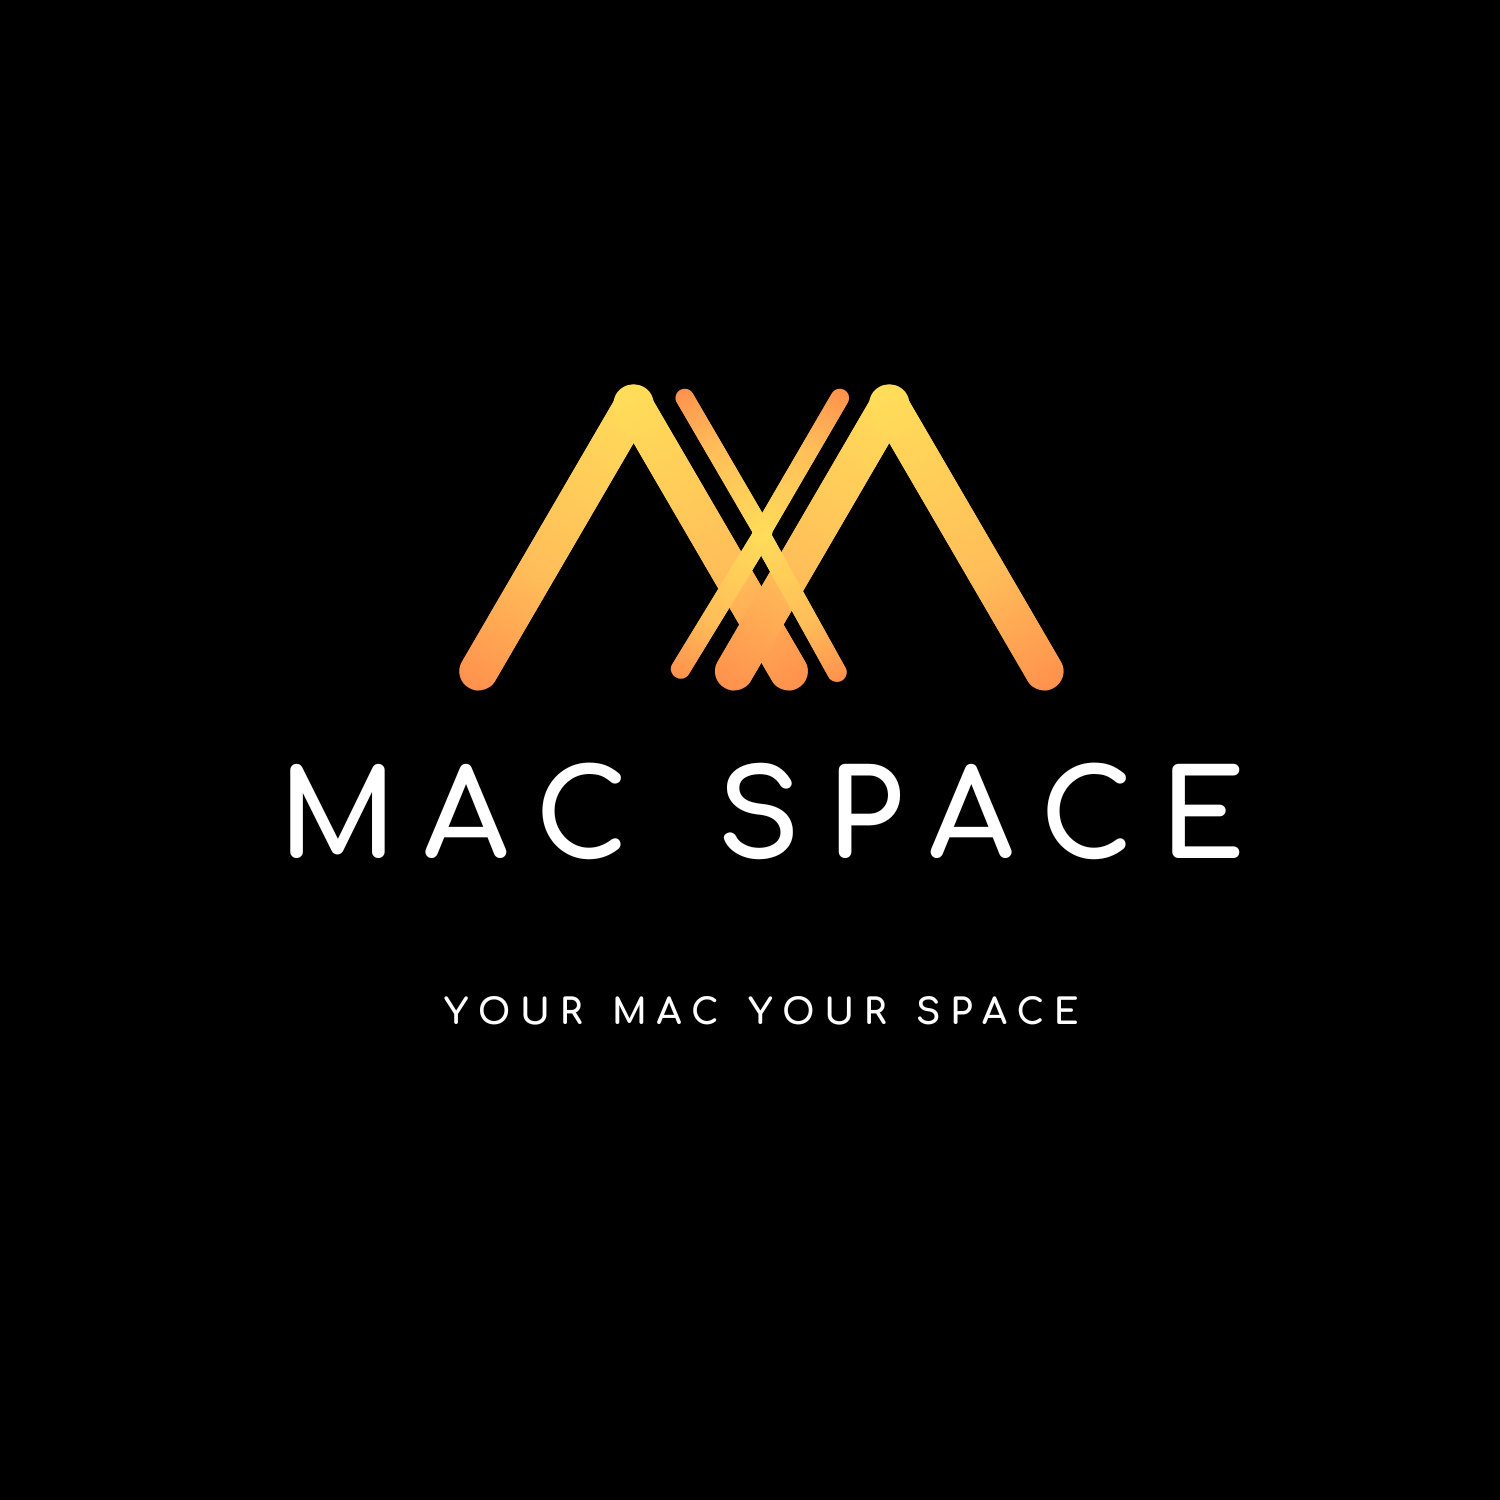 macspace macbook